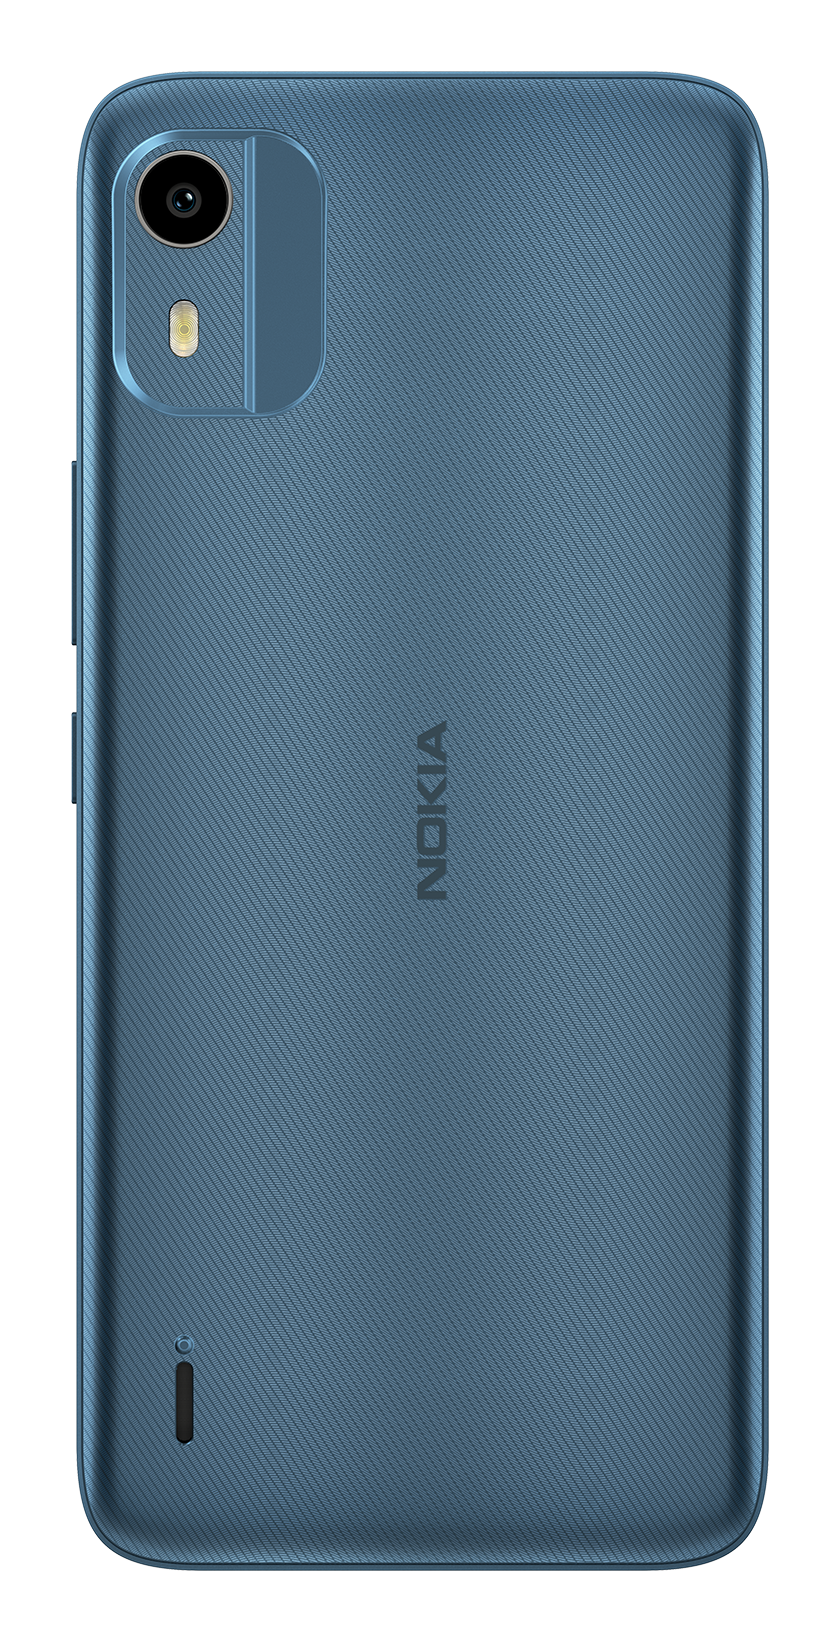 Nokia C12 blue back